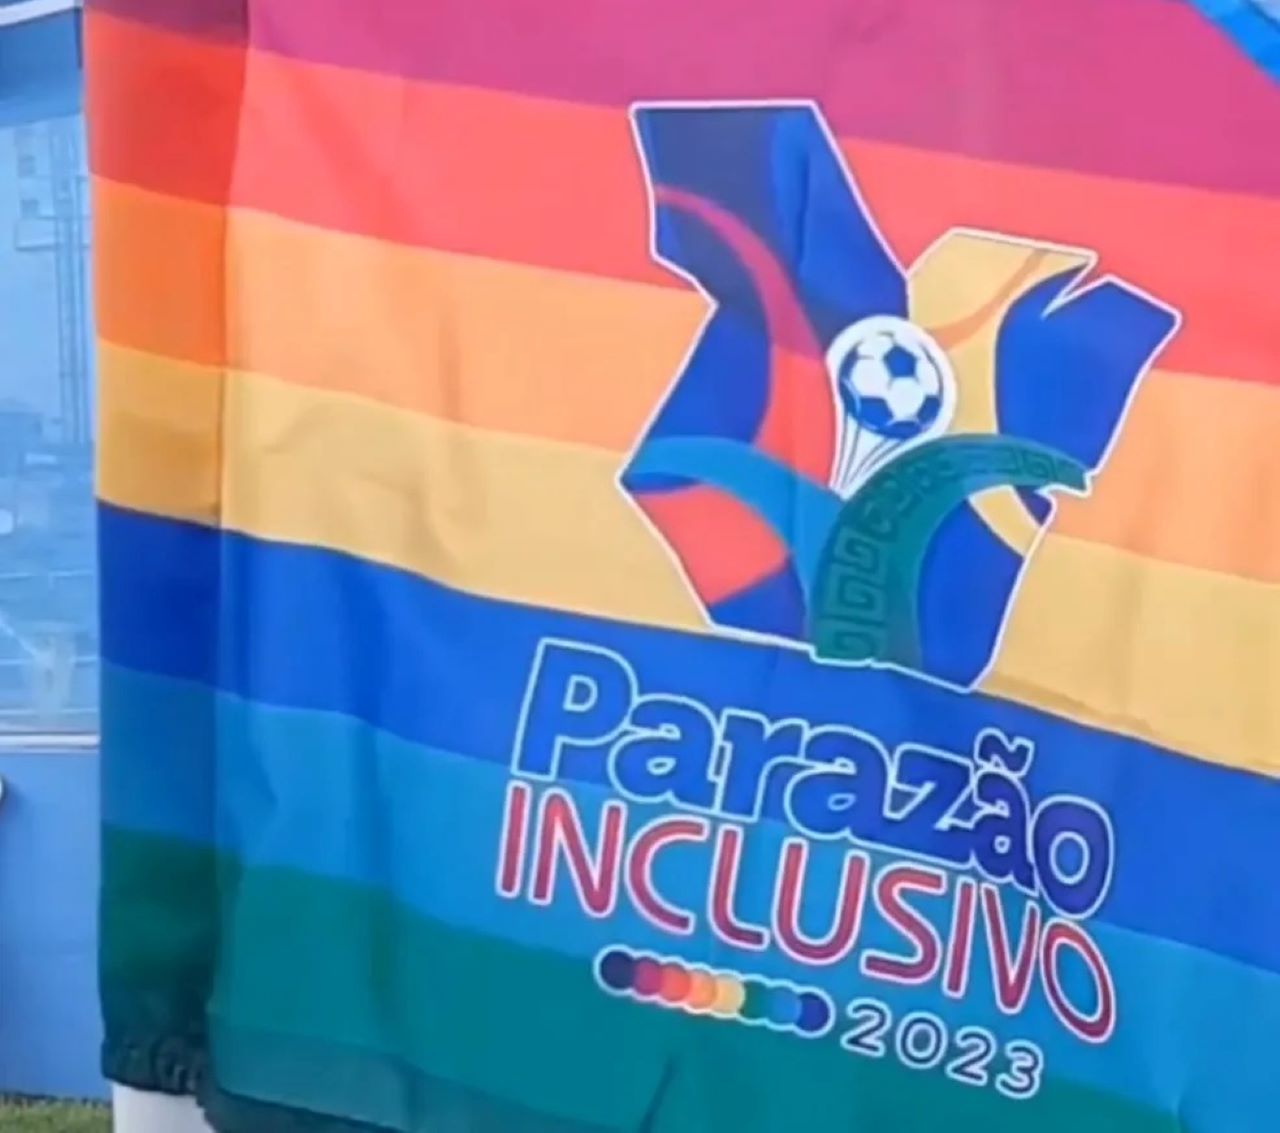 Bandeirinha colorida da campanha de combate à homofobia  da FPF.